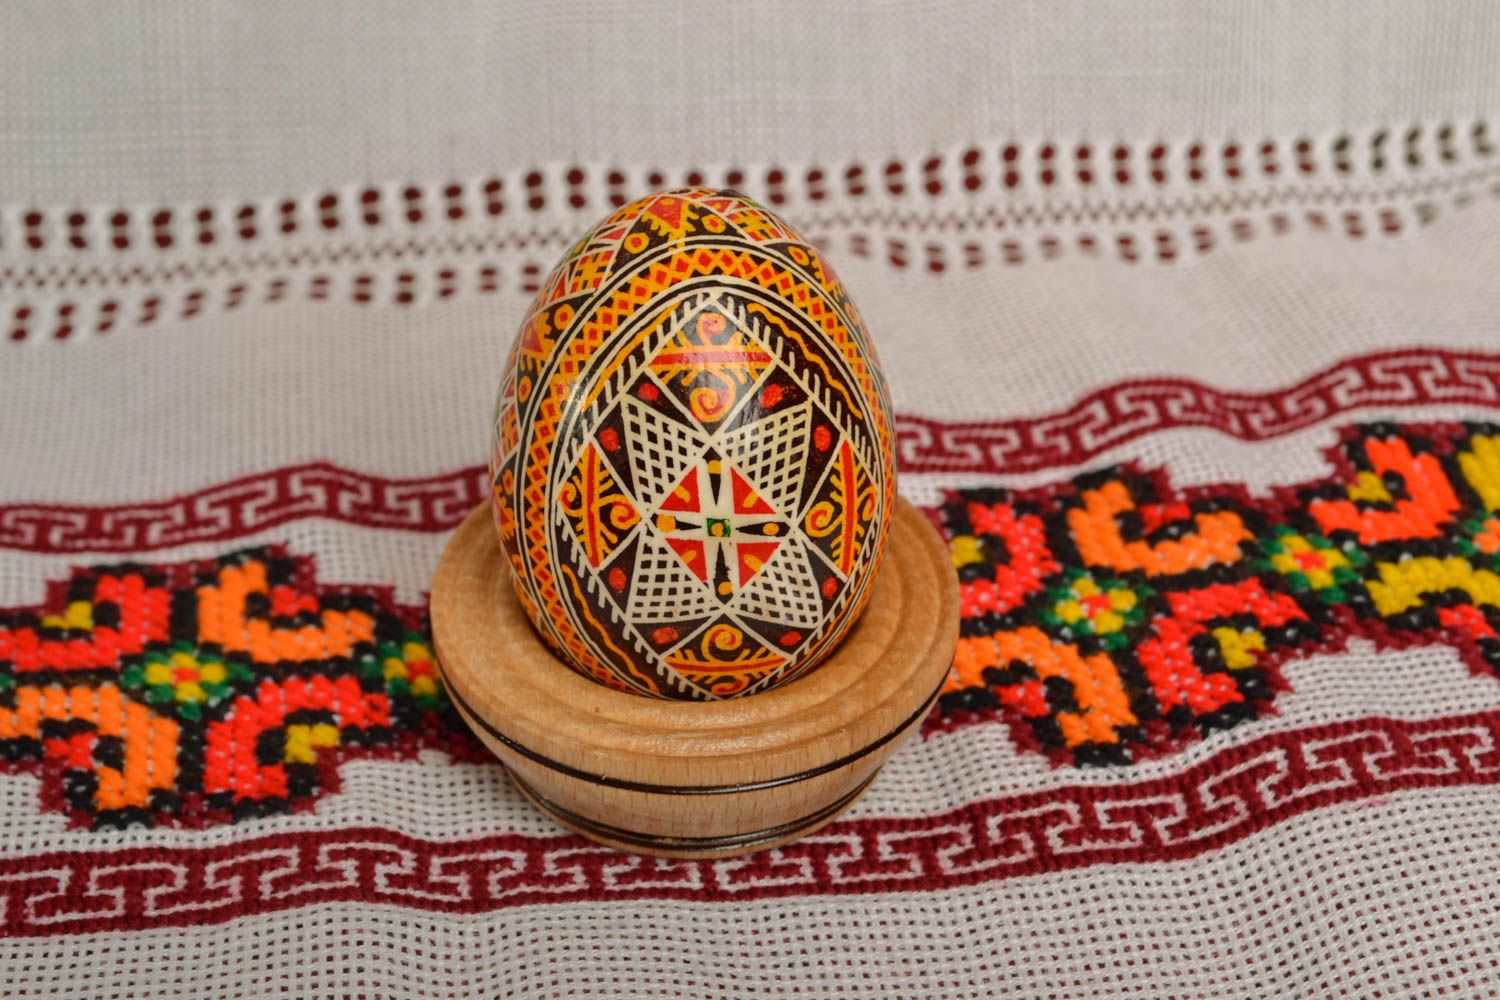 Расписное яйцо подарочное на Пасху  фото 5